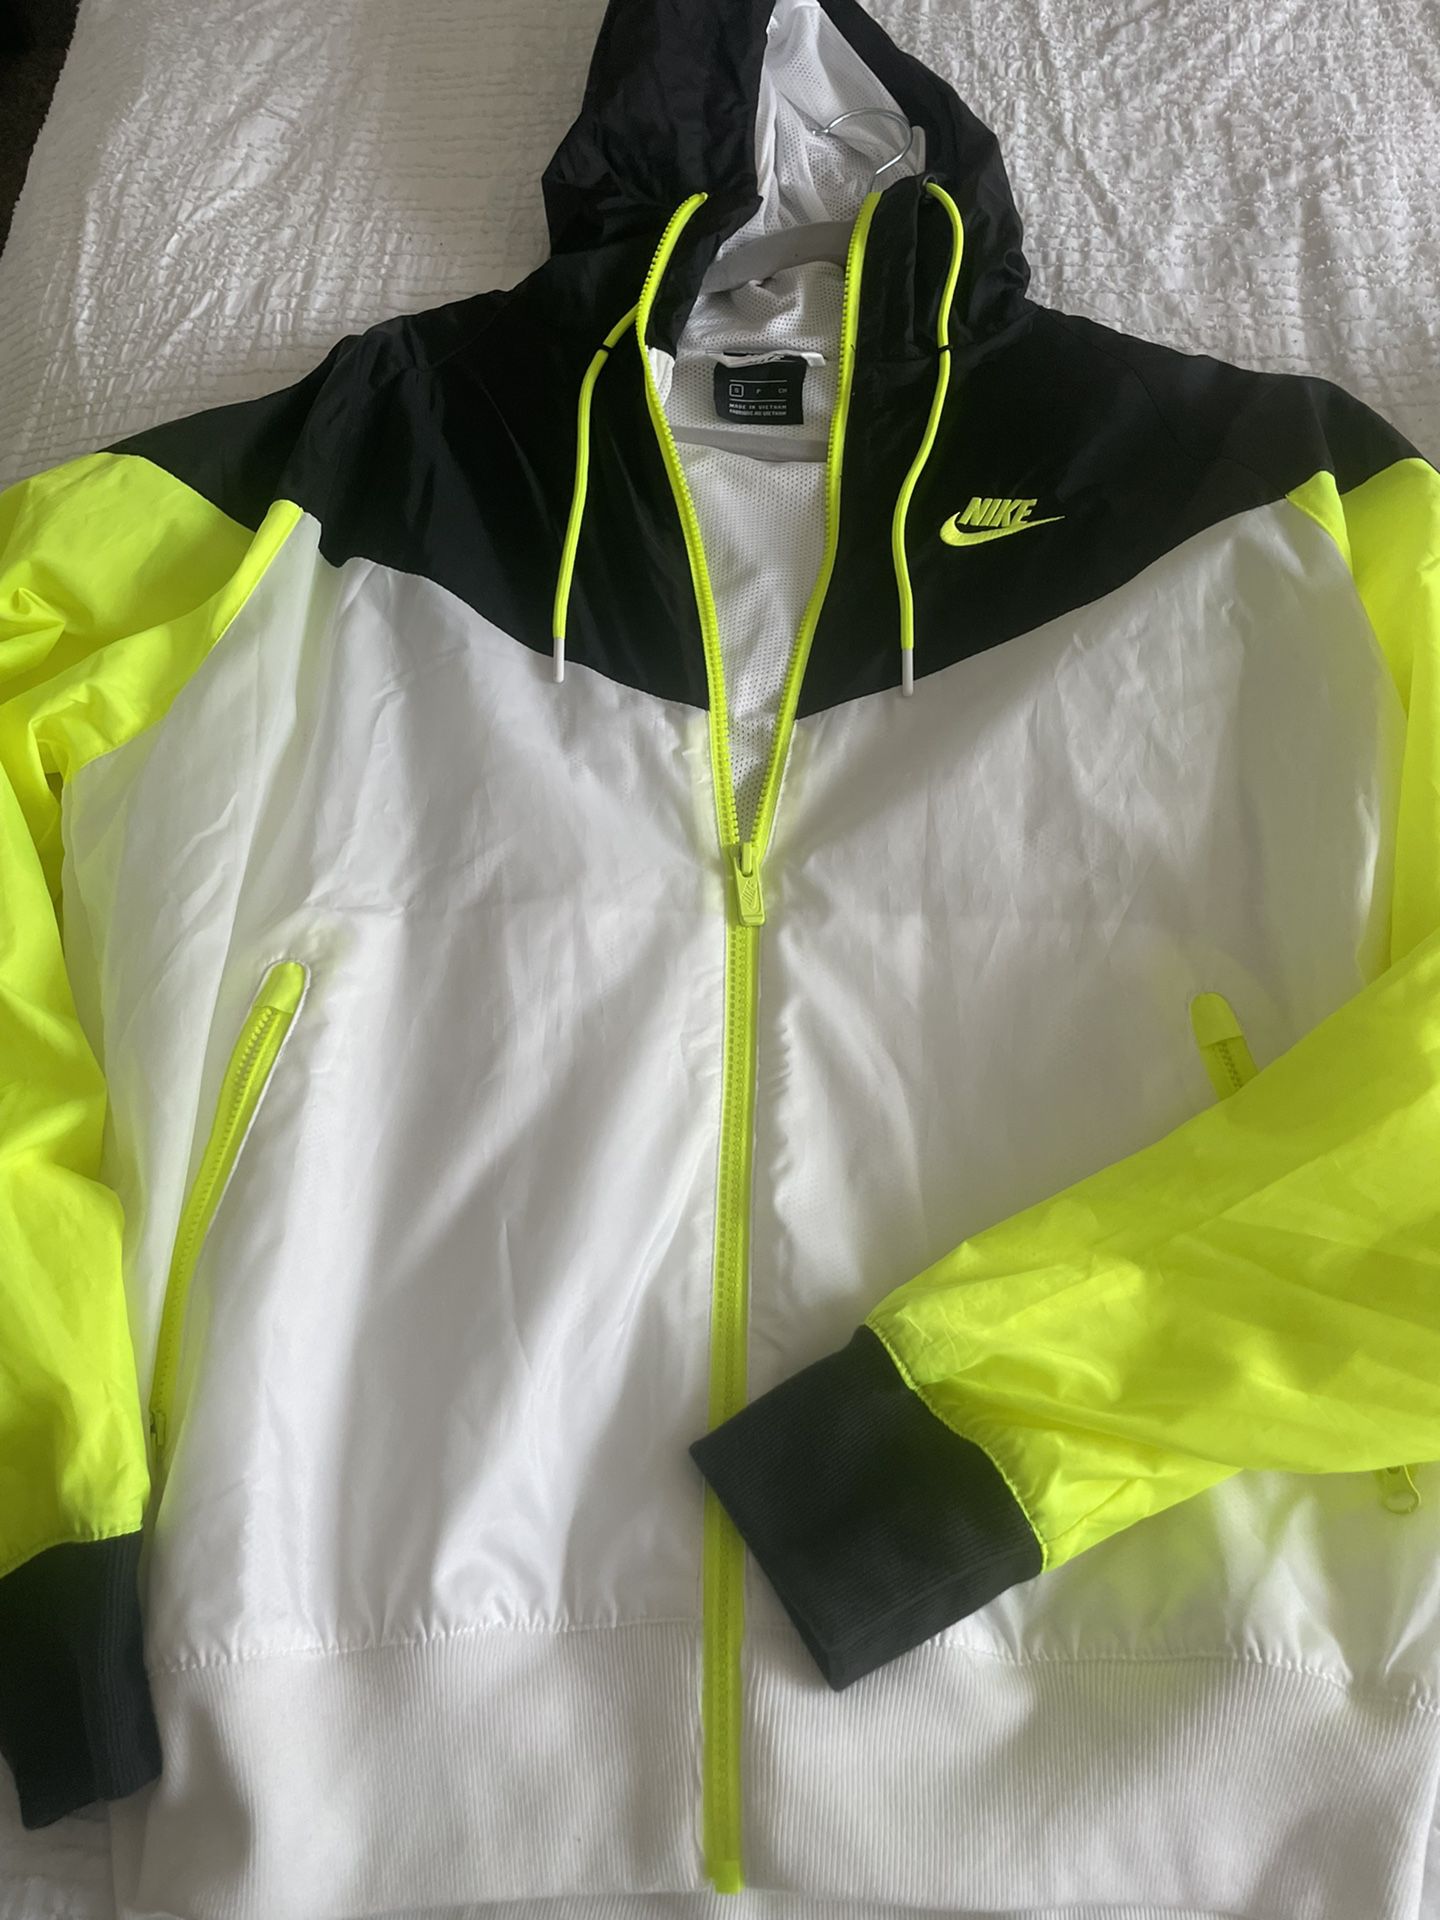 Men’s Nike jacket